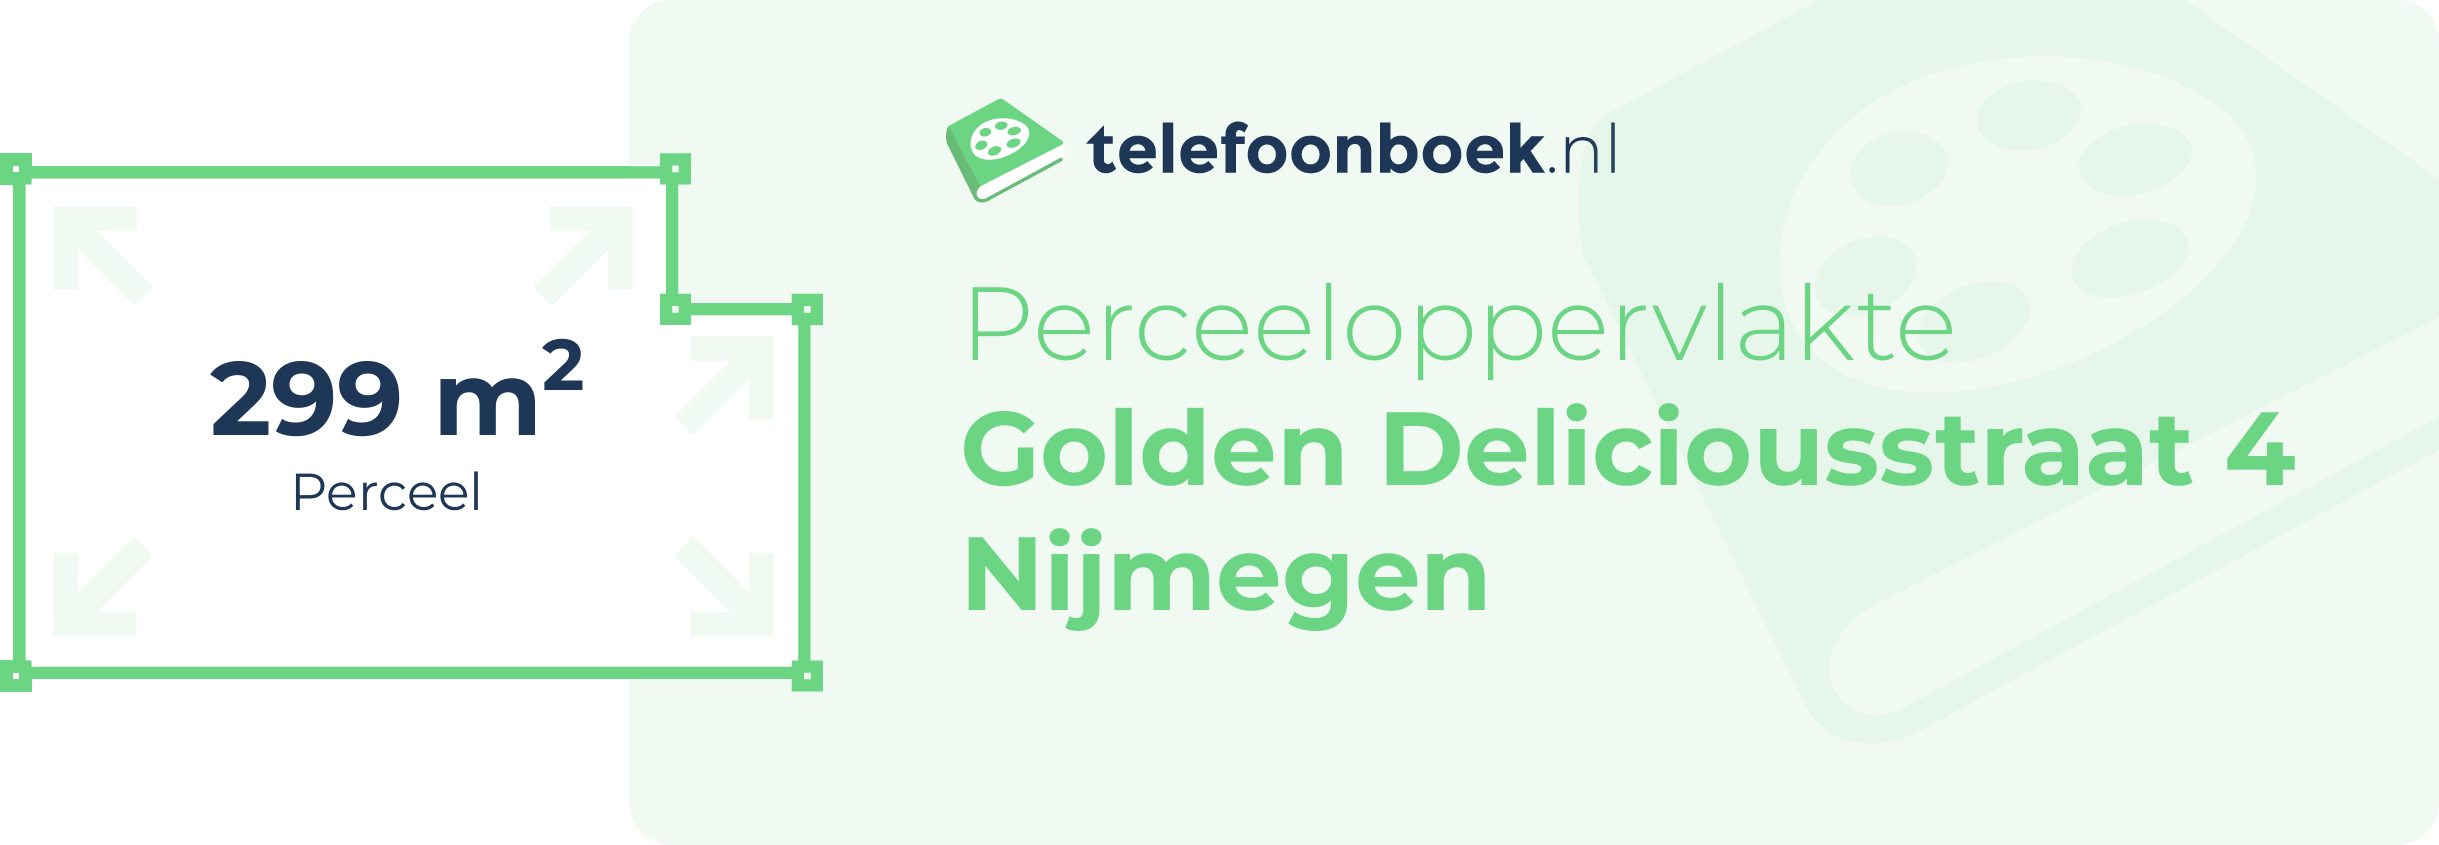 Perceeloppervlakte Golden Deliciousstraat 4 Nijmegen